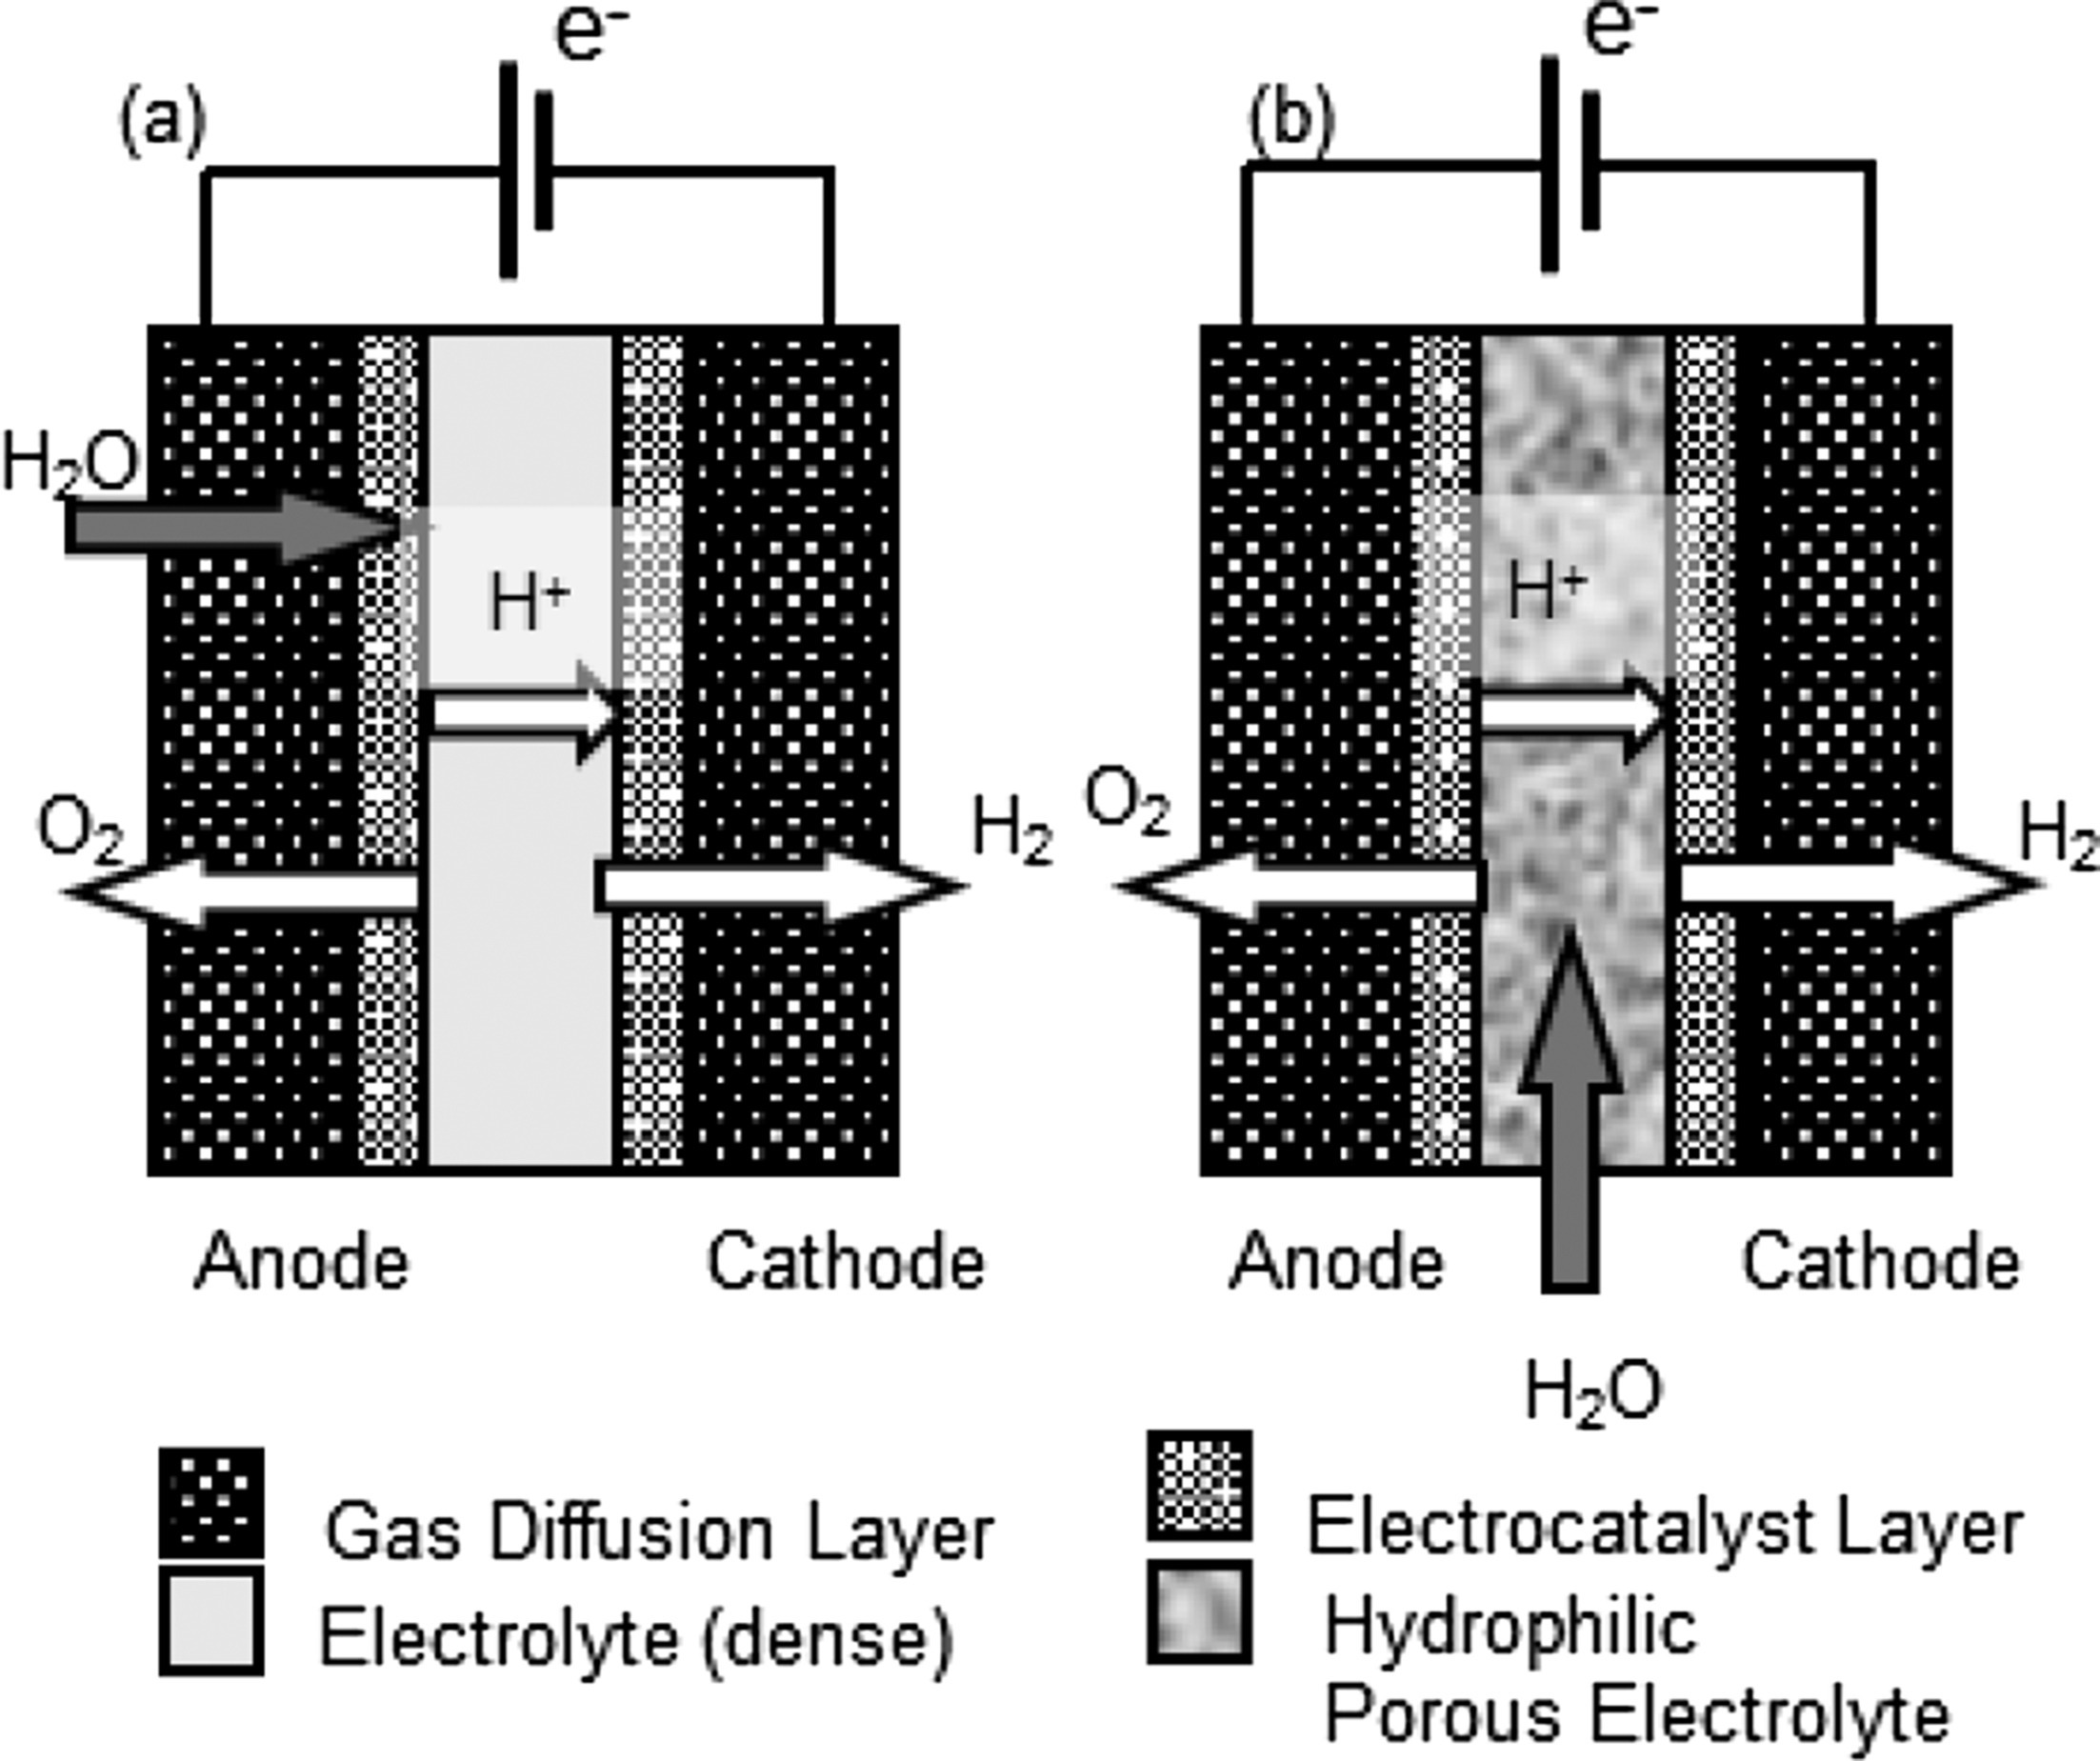 寺山友規研究員の論文が”International Journal of Hydrogen Energy”に掲載されました。